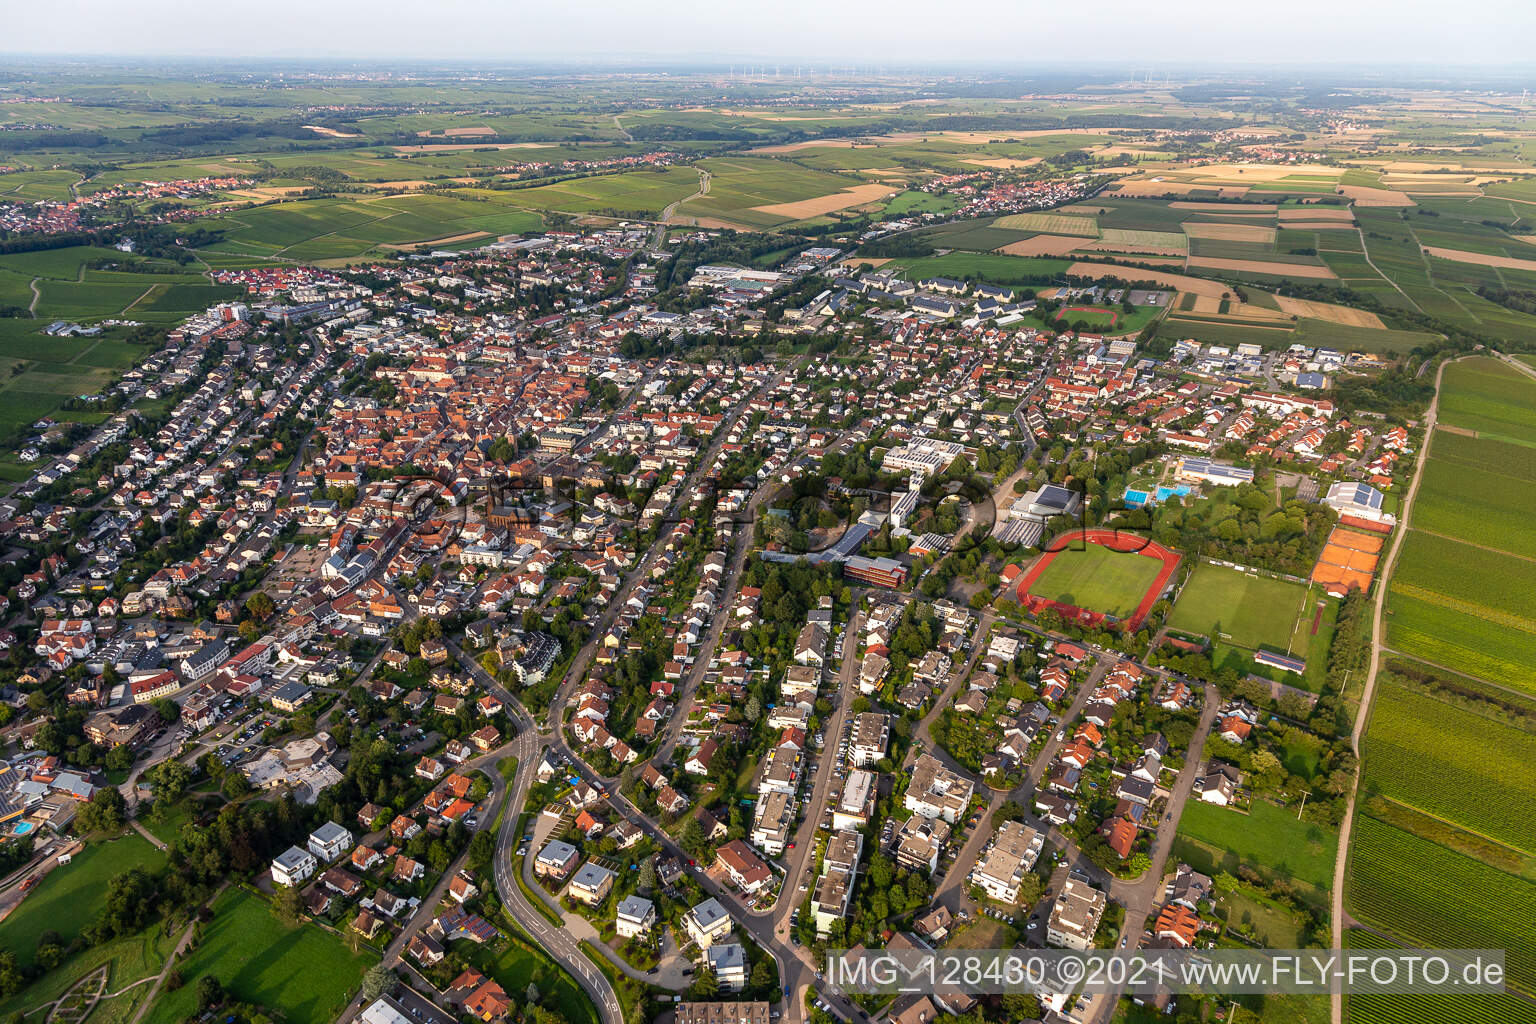 Bad Bergzabern im Bundesland Rheinland-Pfalz, Deutschland von der Drohne aus gesehen